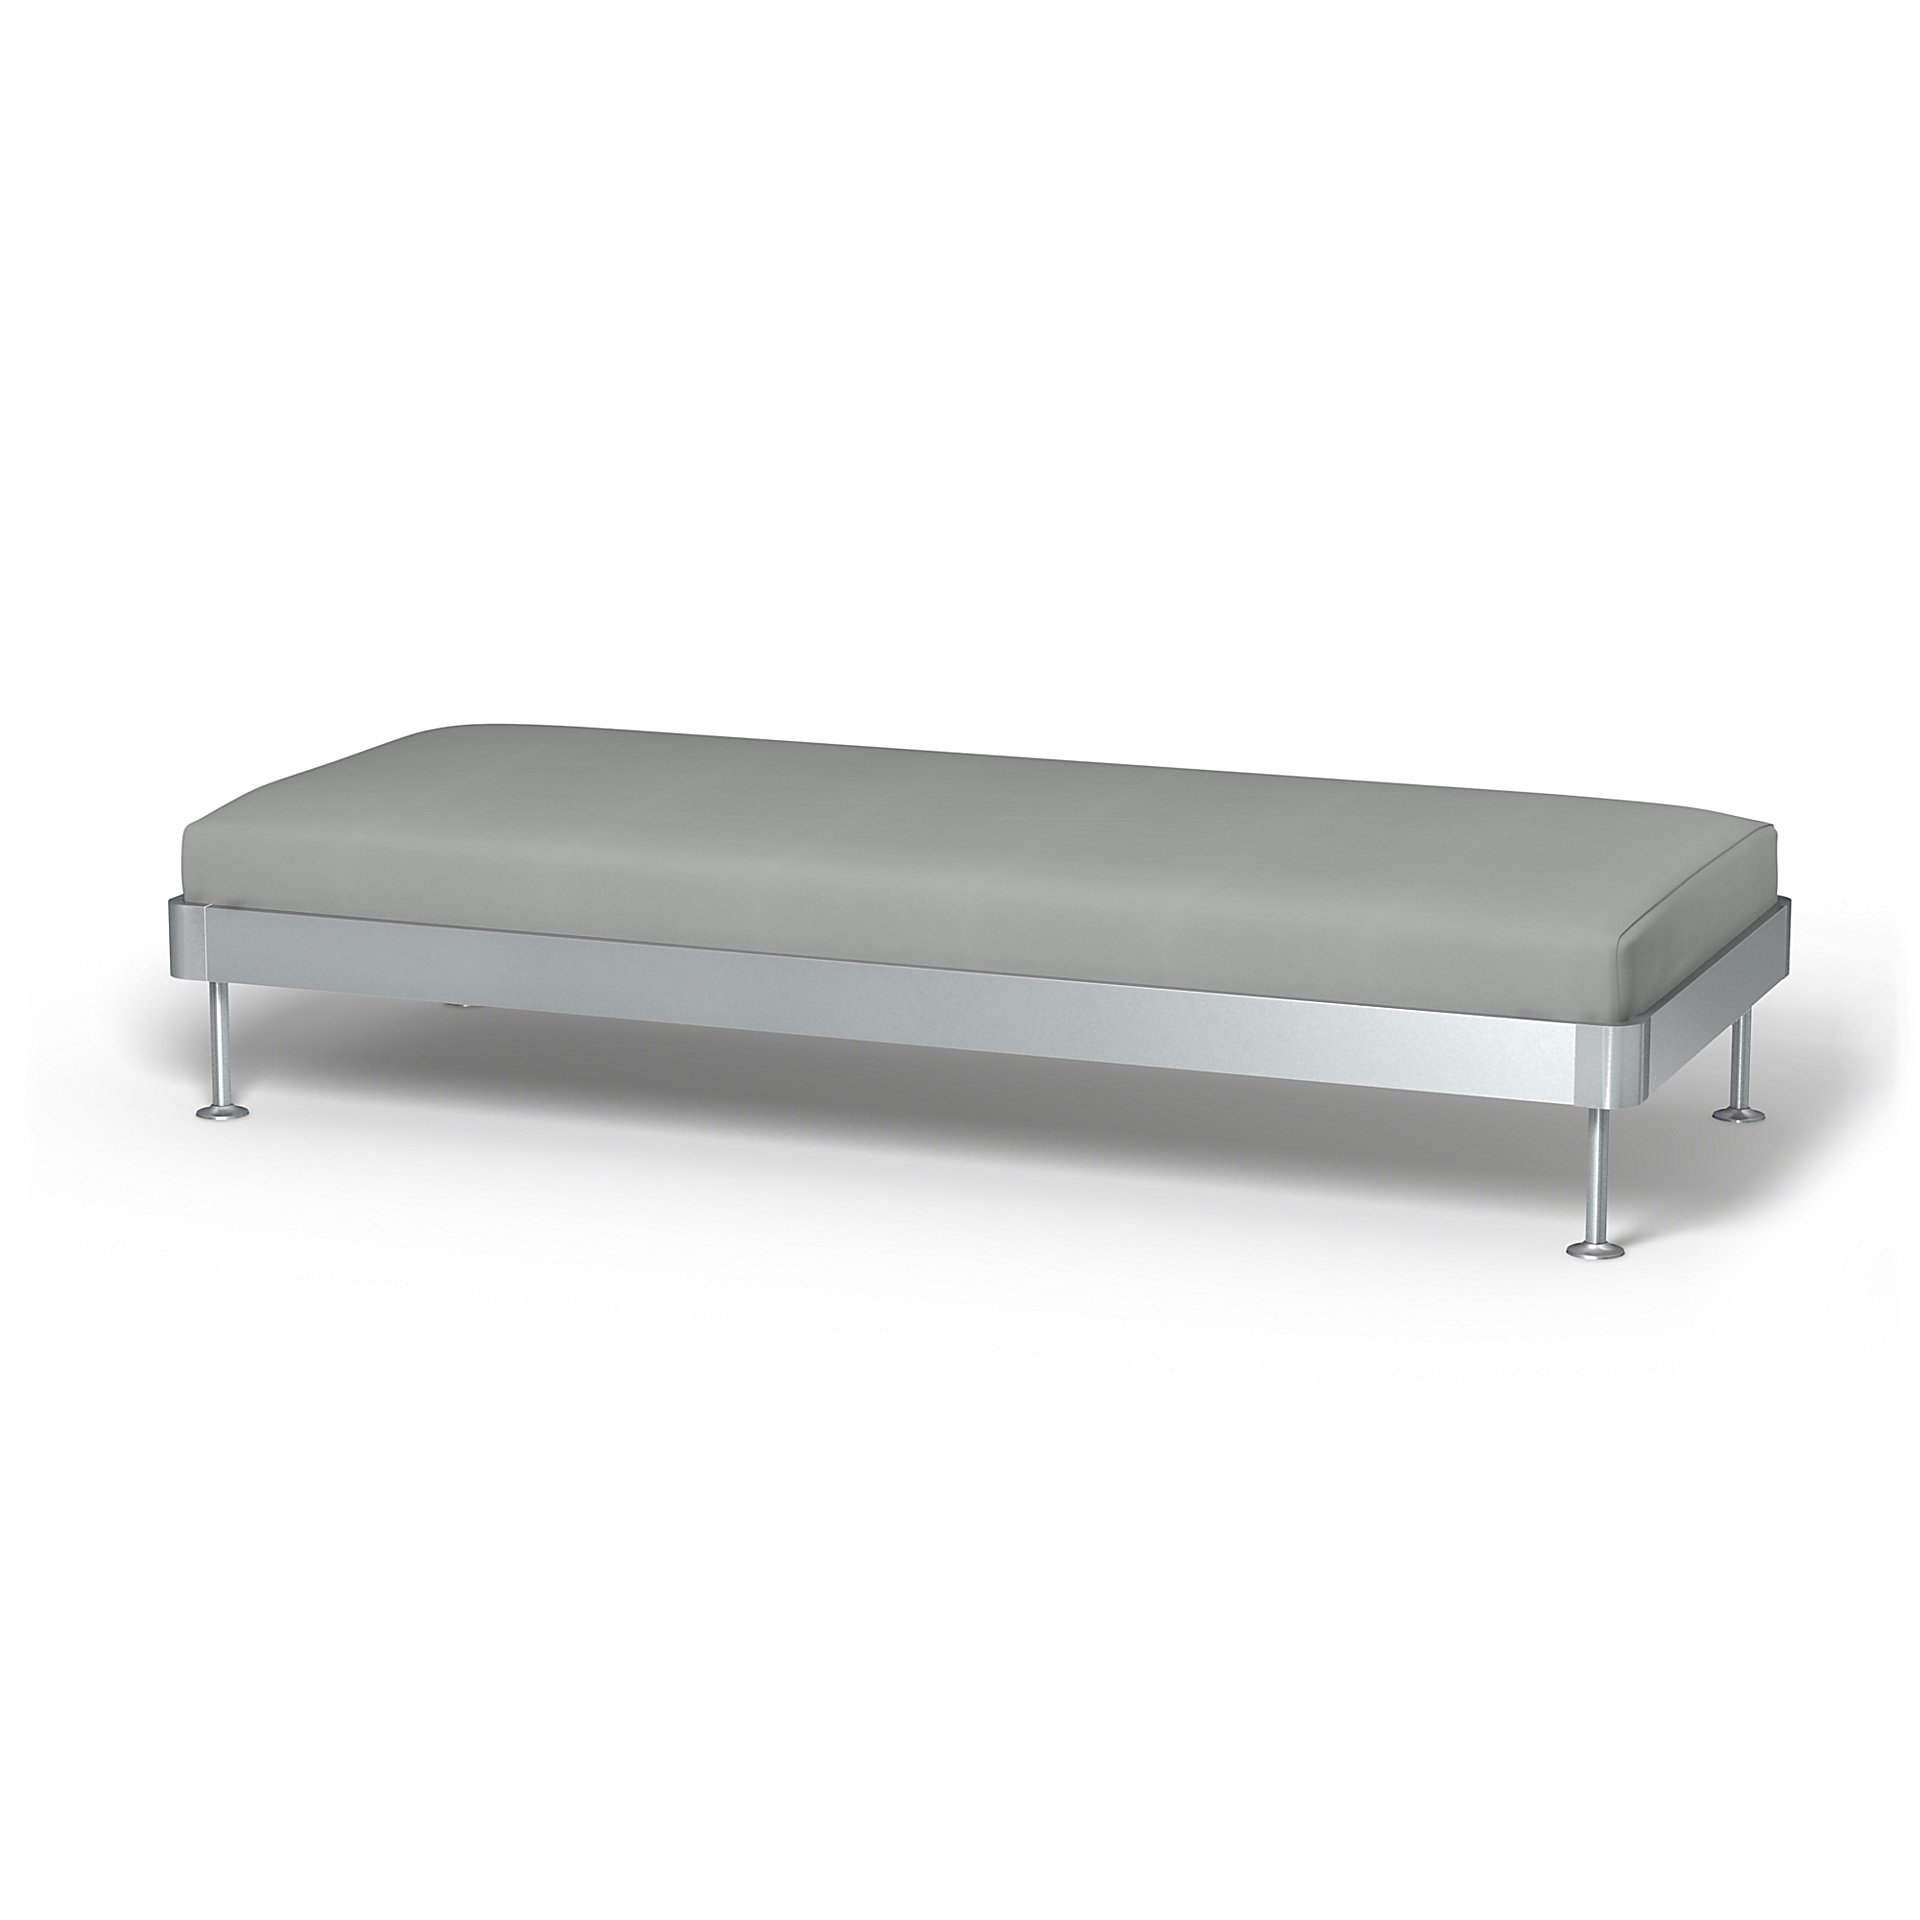 IKEA - Delaktig 3 Seat Platform Cover, Silver Grey, Cotton - Bemz